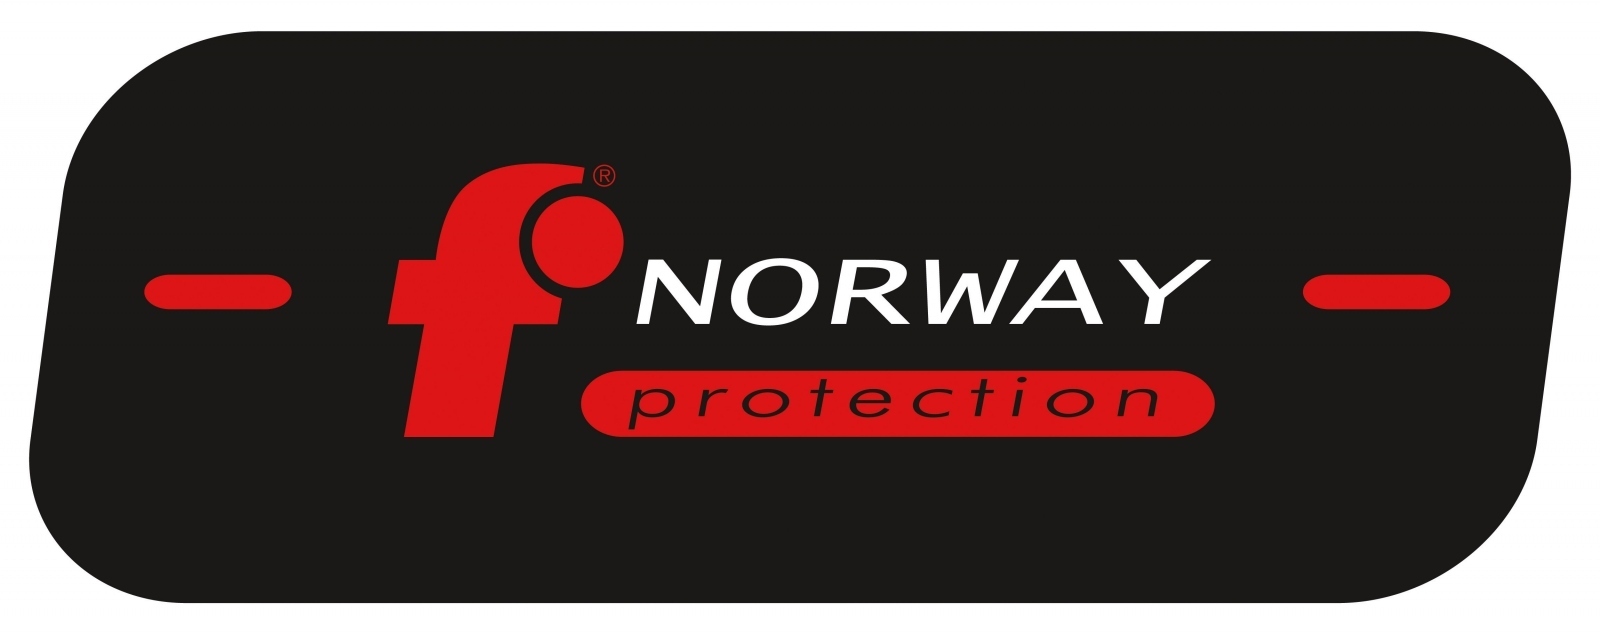 pics/Feldtmann 2016/Körperschutz 01/norwayprotection-logo.jpg